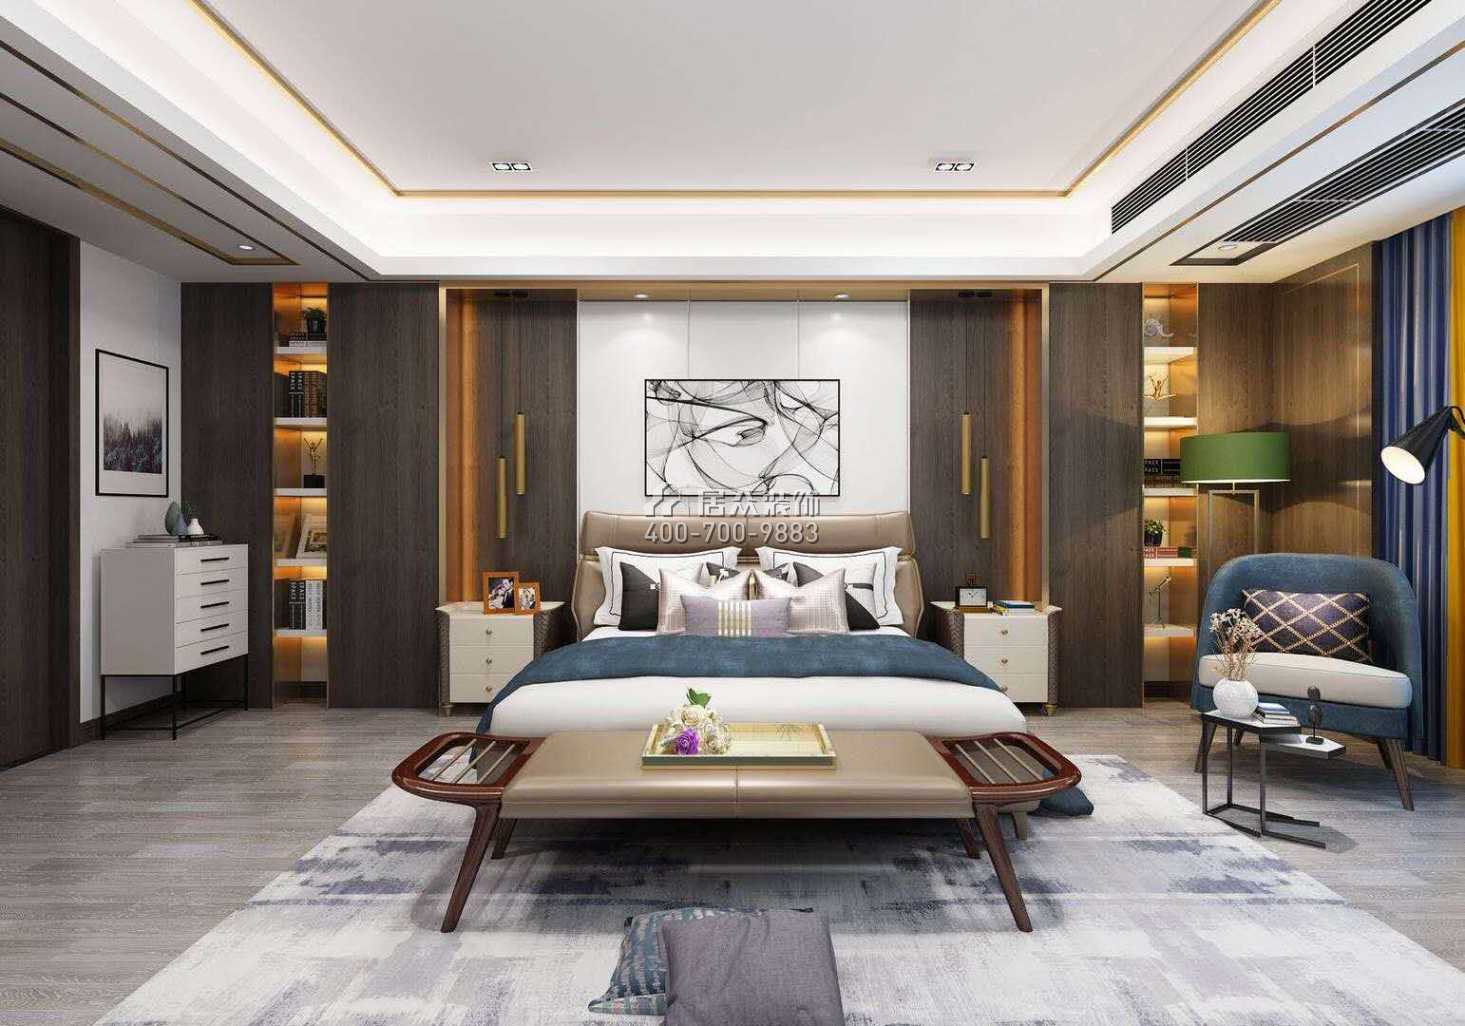 汉寿碧桂园260平方米现代简约风格平层户型卧室装修效果图